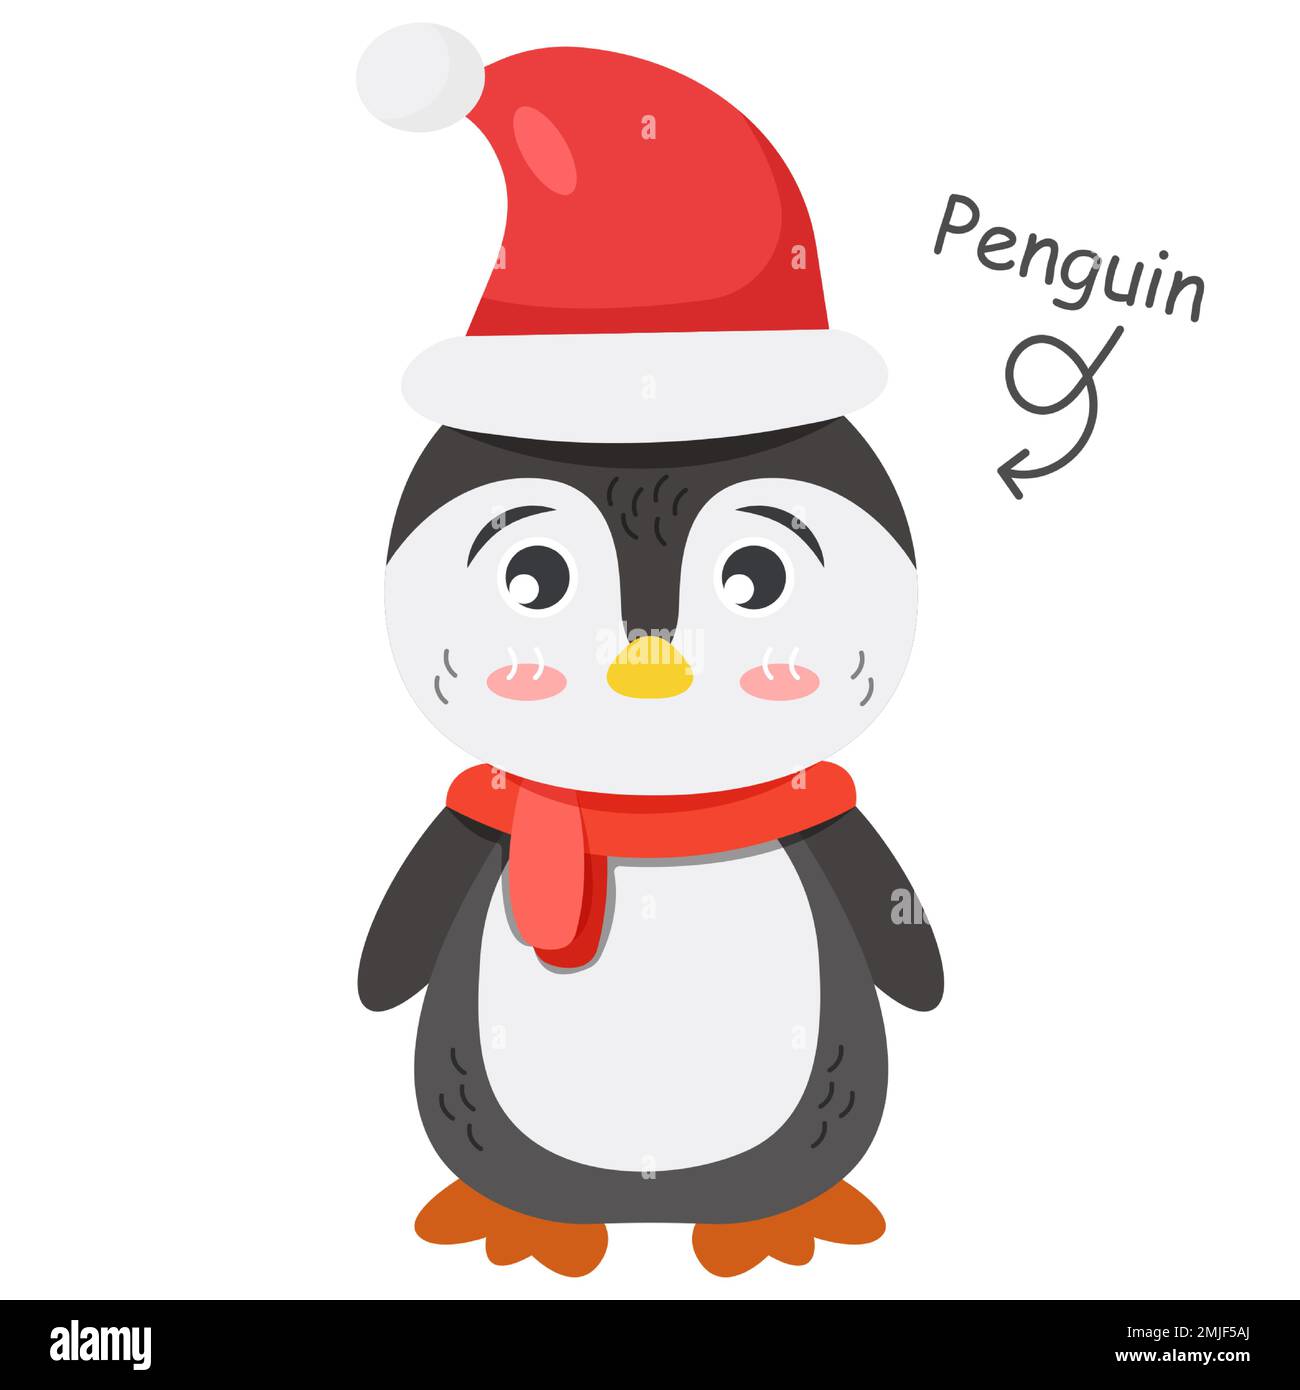 Pinguin-Zeichentrickfiguren mit Kleidung. Vector . Stock Vektor